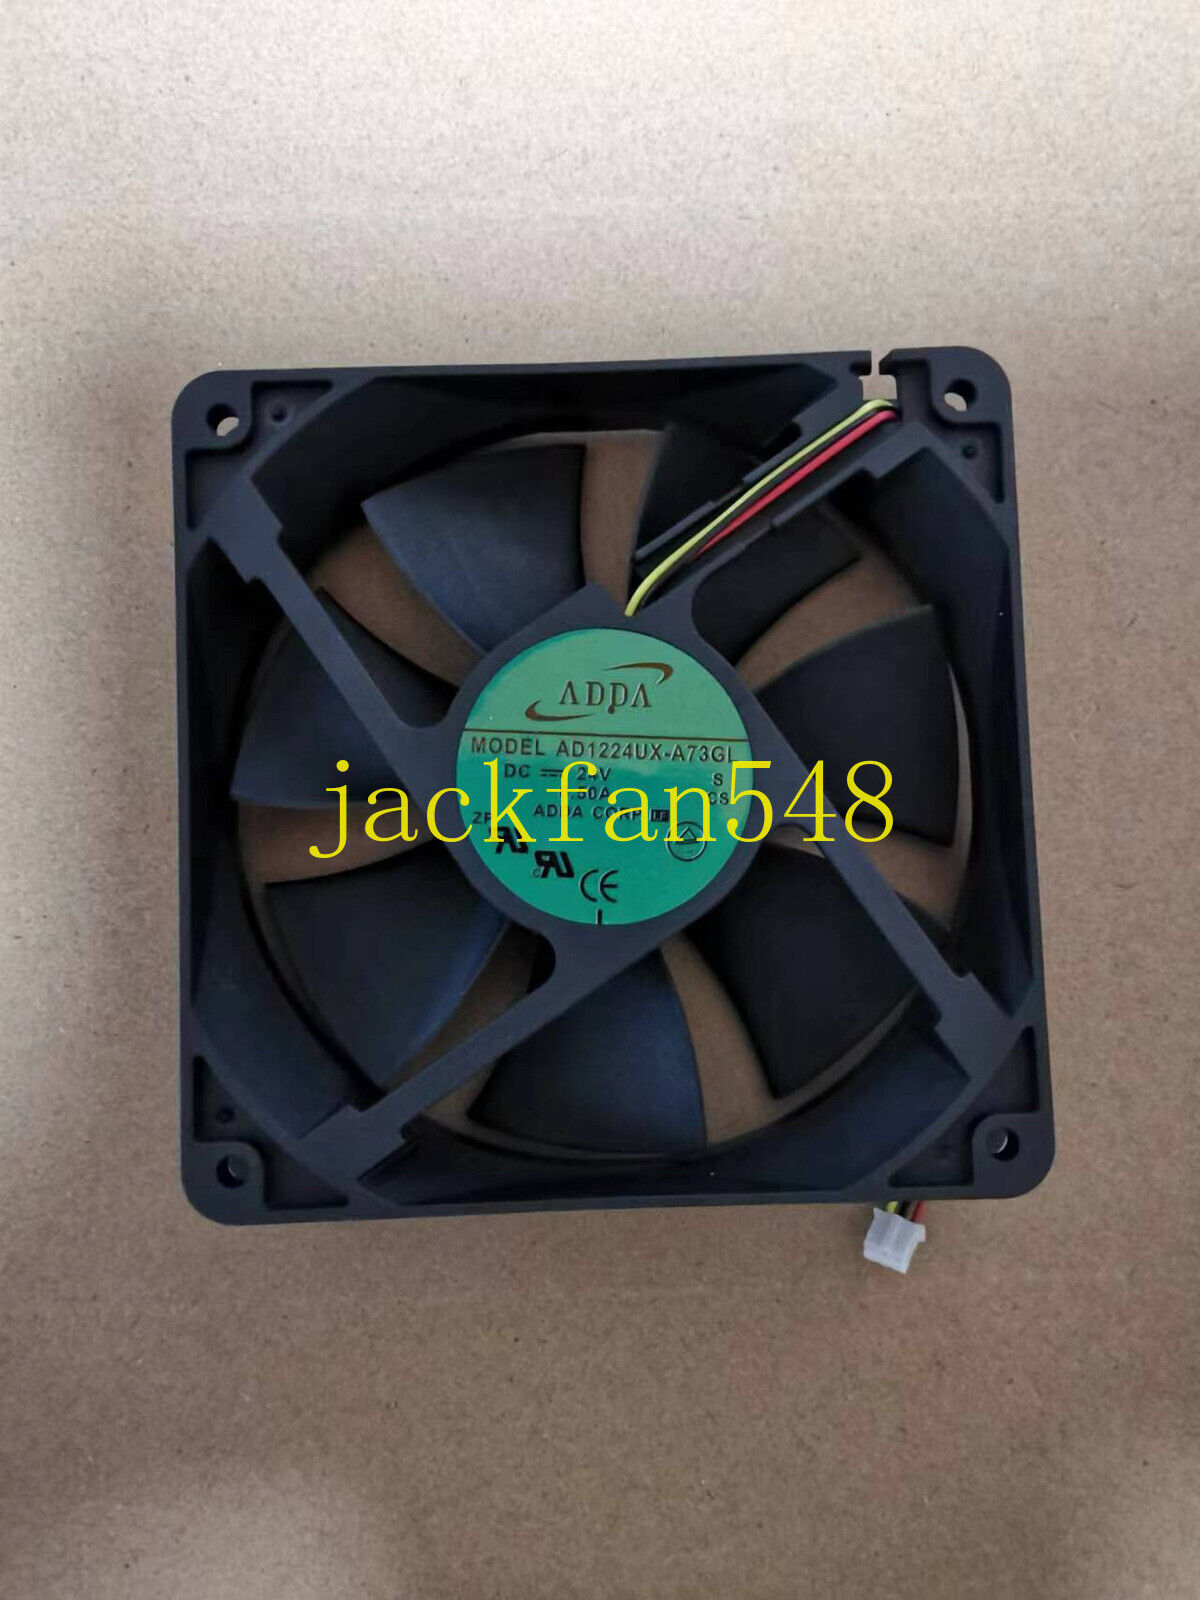 1pc ADDA AD1224UX-A73GL 24V 0.25A 12025 12CM 3-wire Inverter Fan